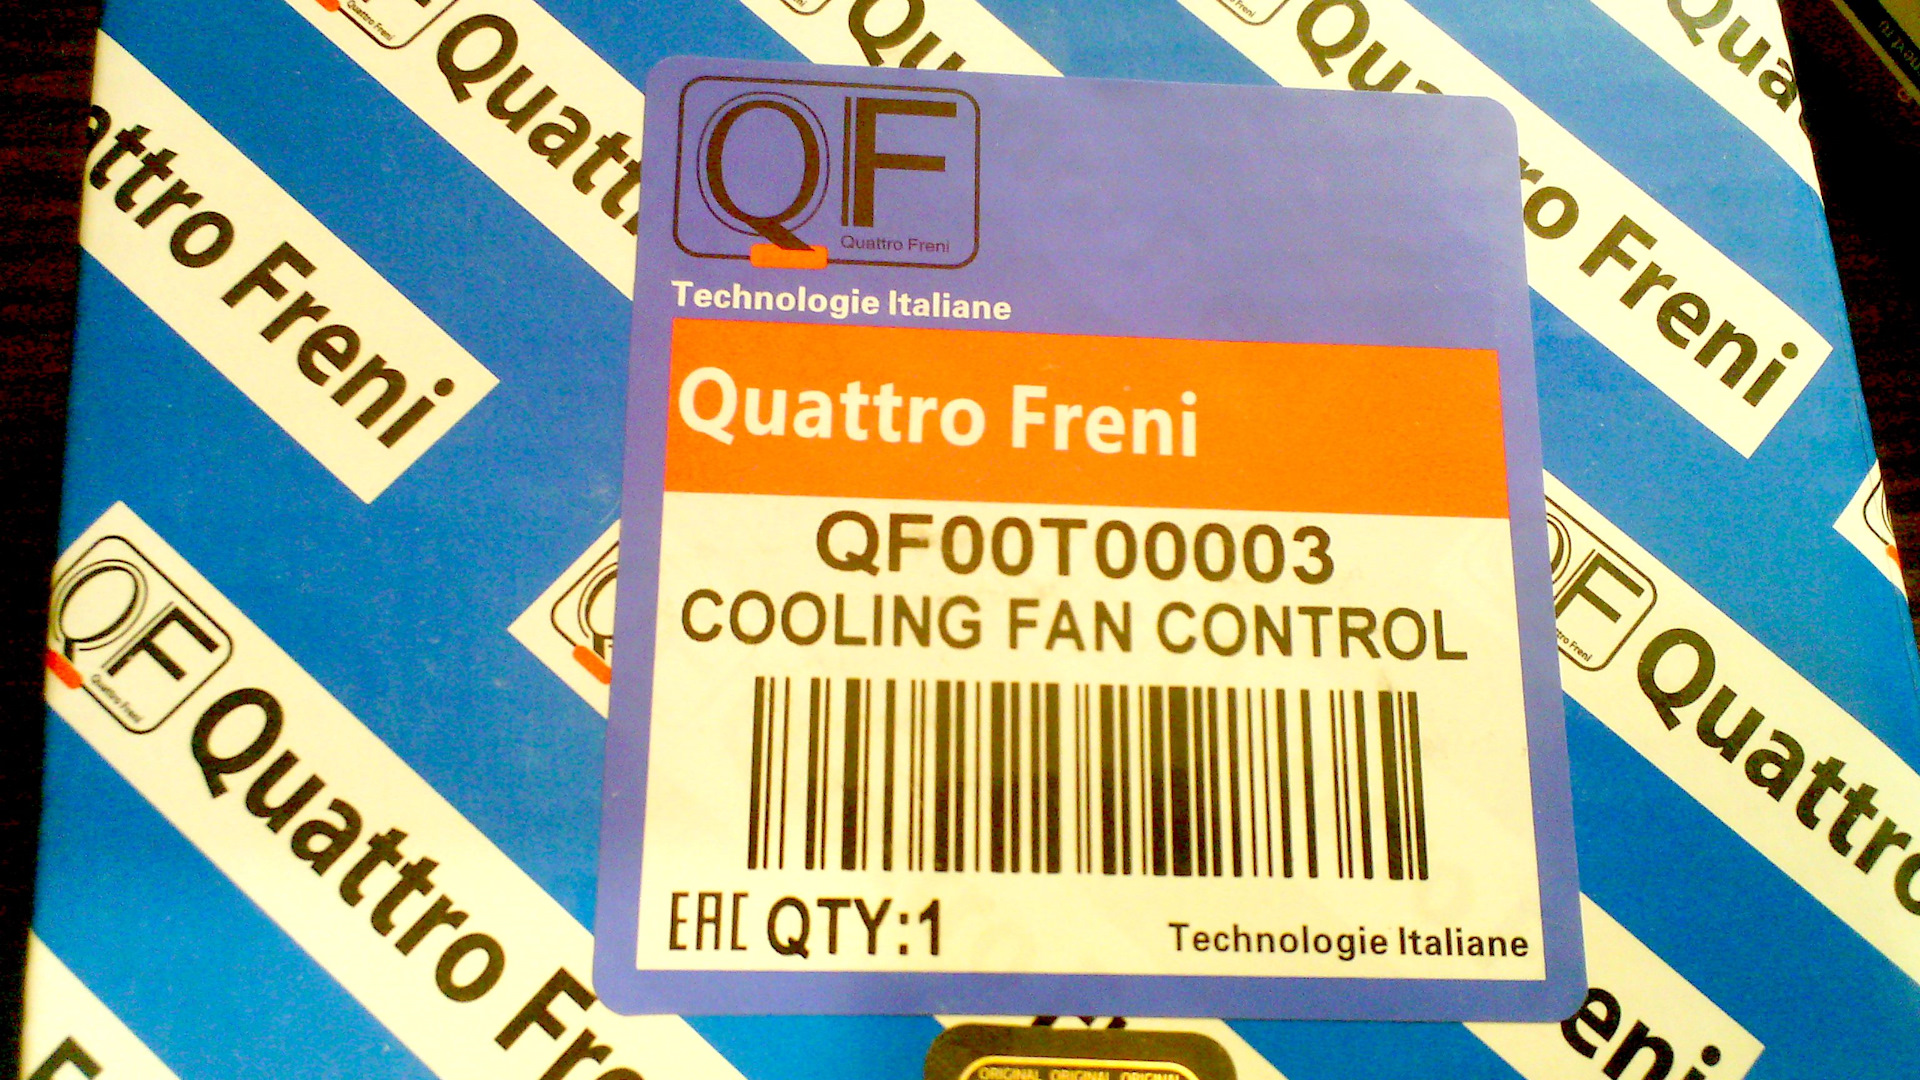 Freni страна производитель. Quattro freni логотип. Quattro freni Страна производства запчастей. Quattro freni бензонасос отзывы.